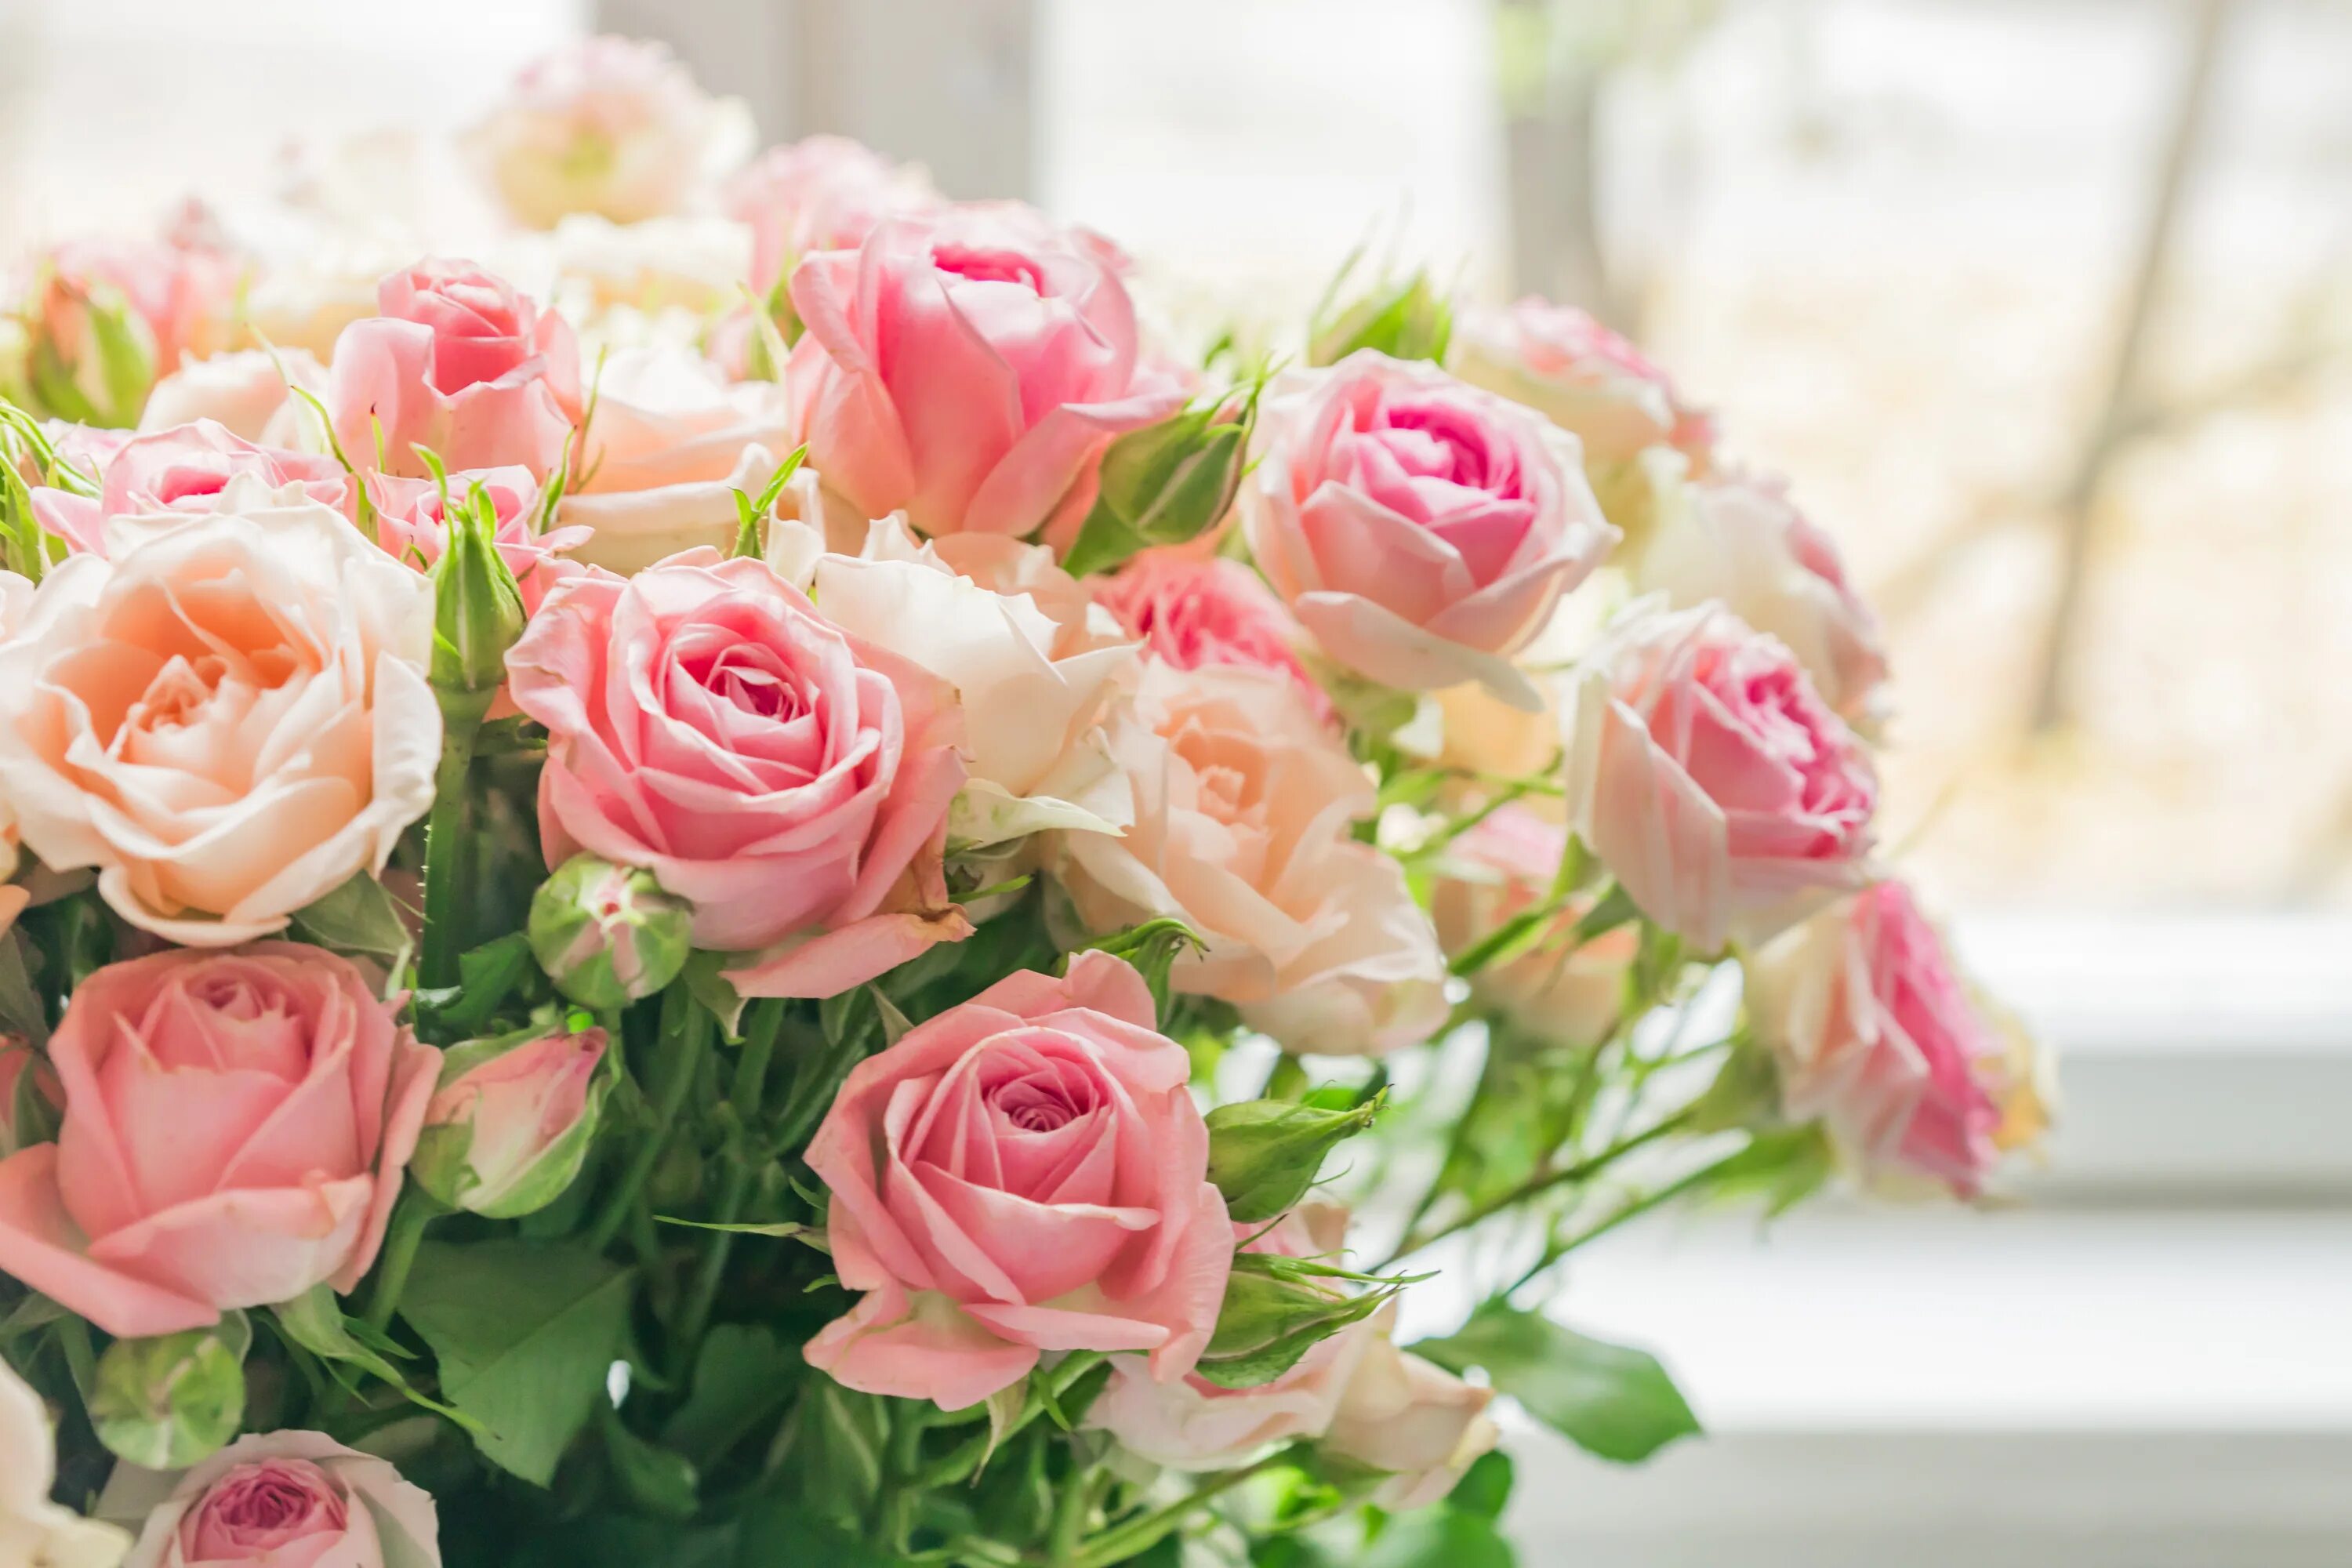 Картинка с цветами на столе. Нежные кустовые розы. Красивый нежный букет. Нежный цветок.